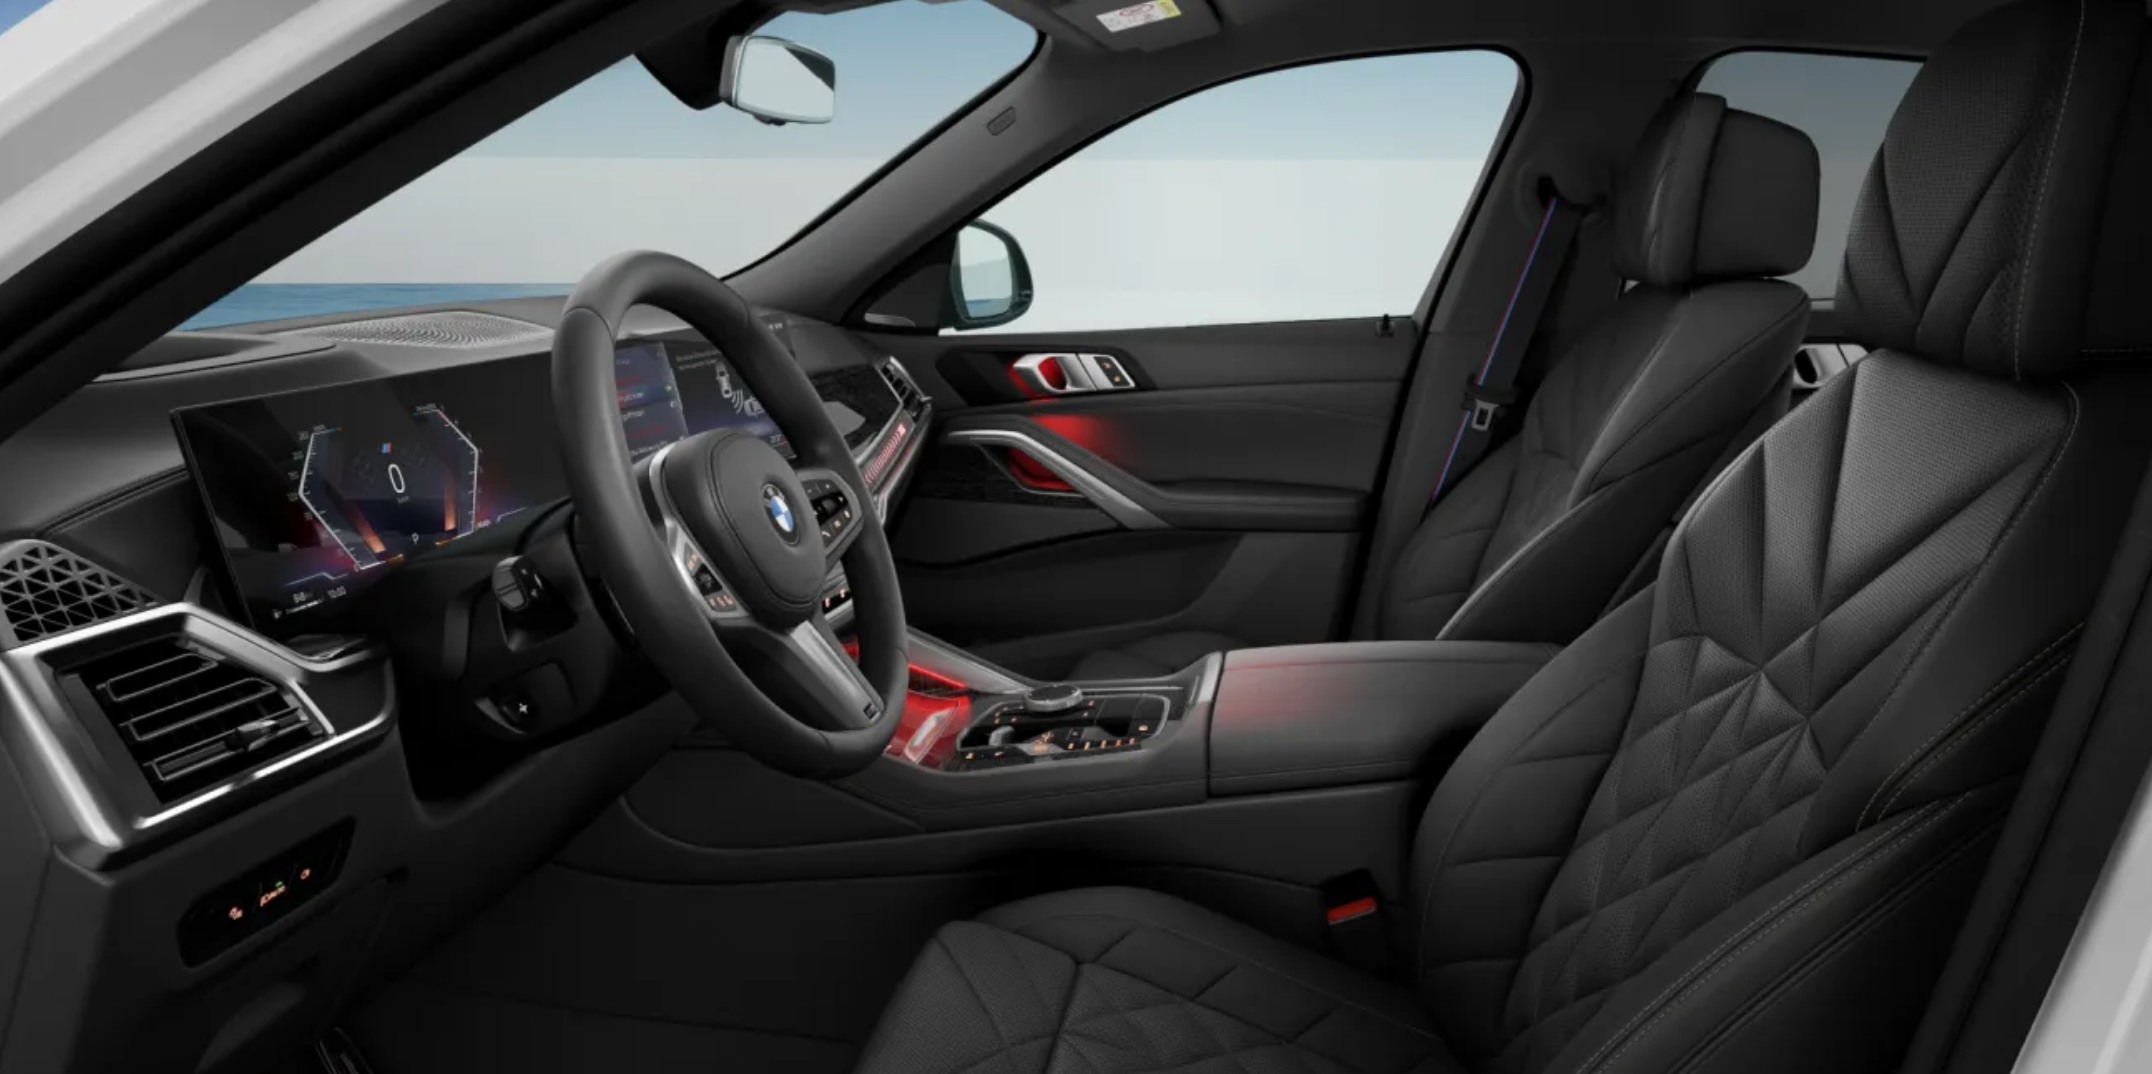 BMW X6 xDrive40d - Nový facelift:  Luxusní naftové SUV s výhodným úvěrem - Objednejte nyní online